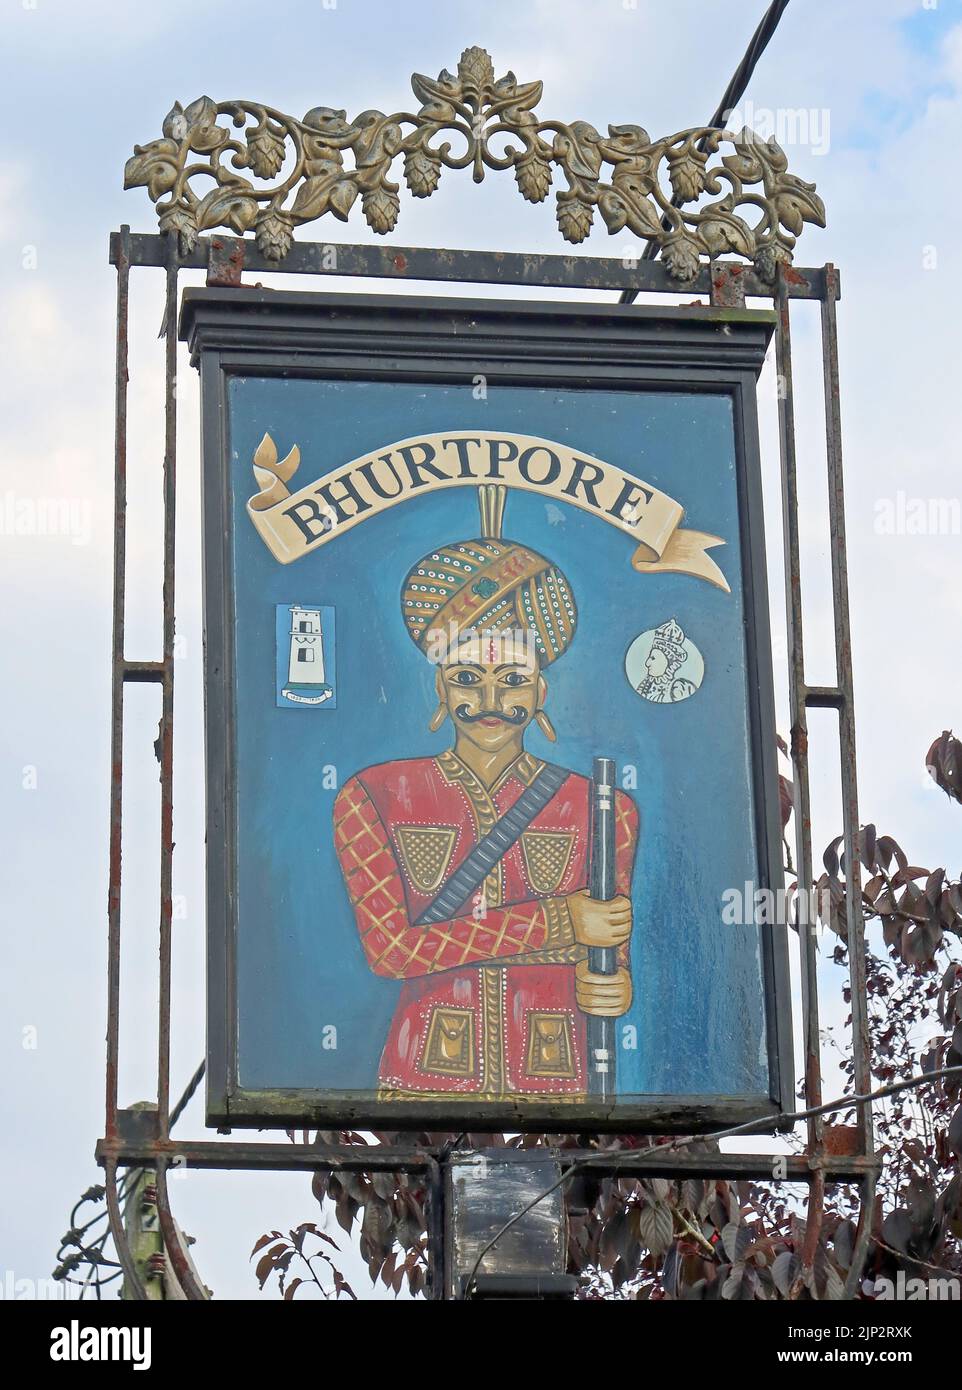 Bhurtpore Inn, Wrenbury Rd, Aston, Nantwich, Cheshire, Angleterre, Royaume-Uni, ,CW5 8DQ - signes et CAMRA Real ALE - bières artisanales et cidre Banque D'Images